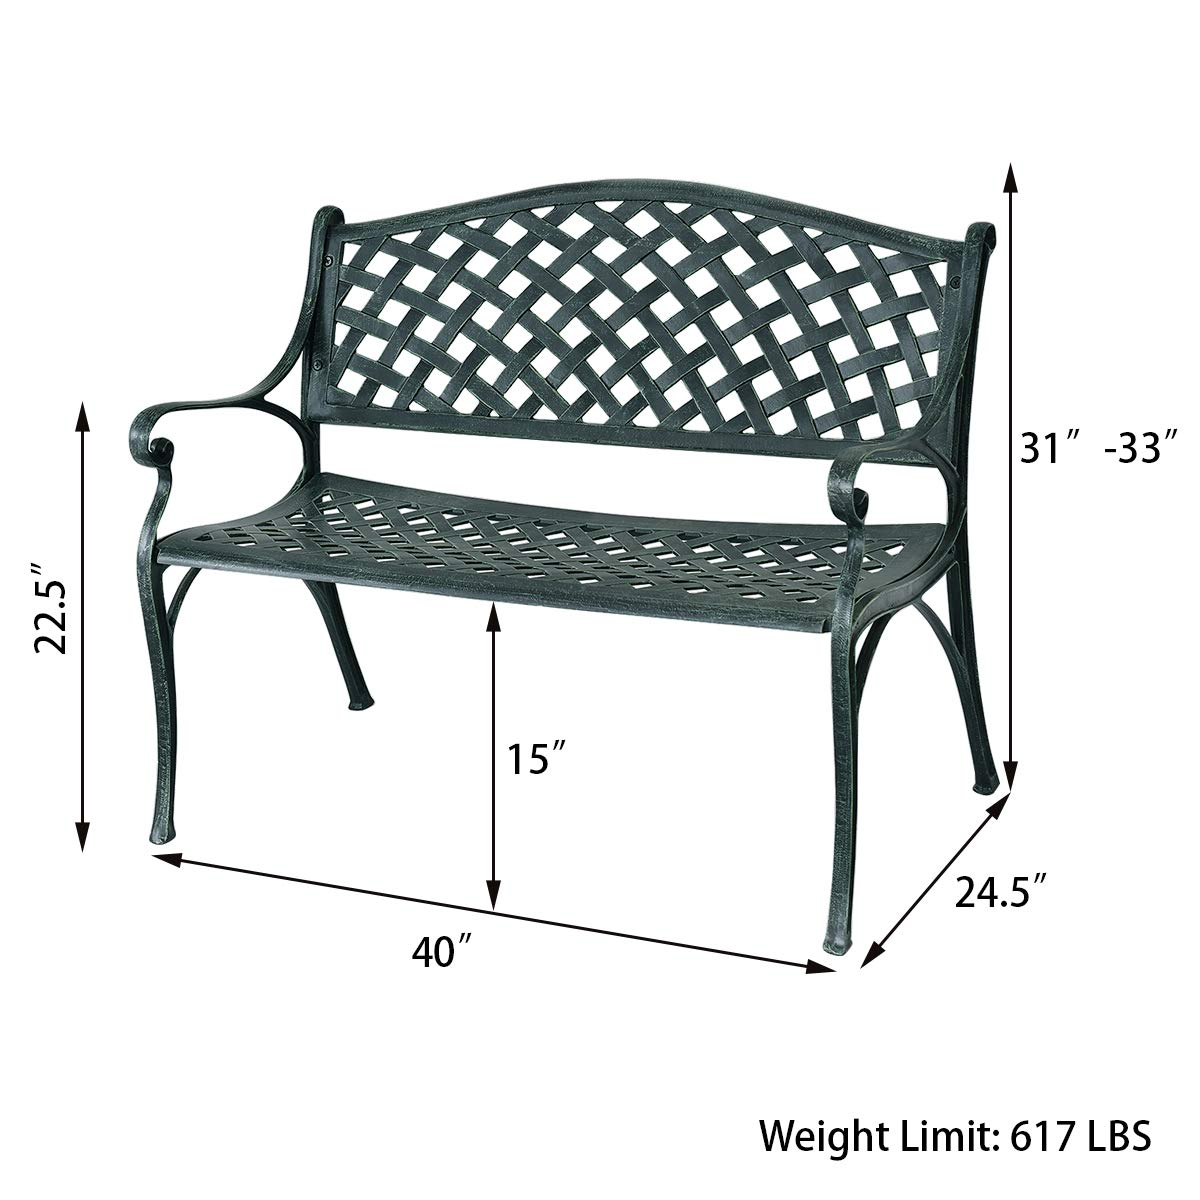 Giantex 40" Outdoor Antique Garden Bench Aluminum Frame Seats Chair Patio Garden Furni(Ancient Green)